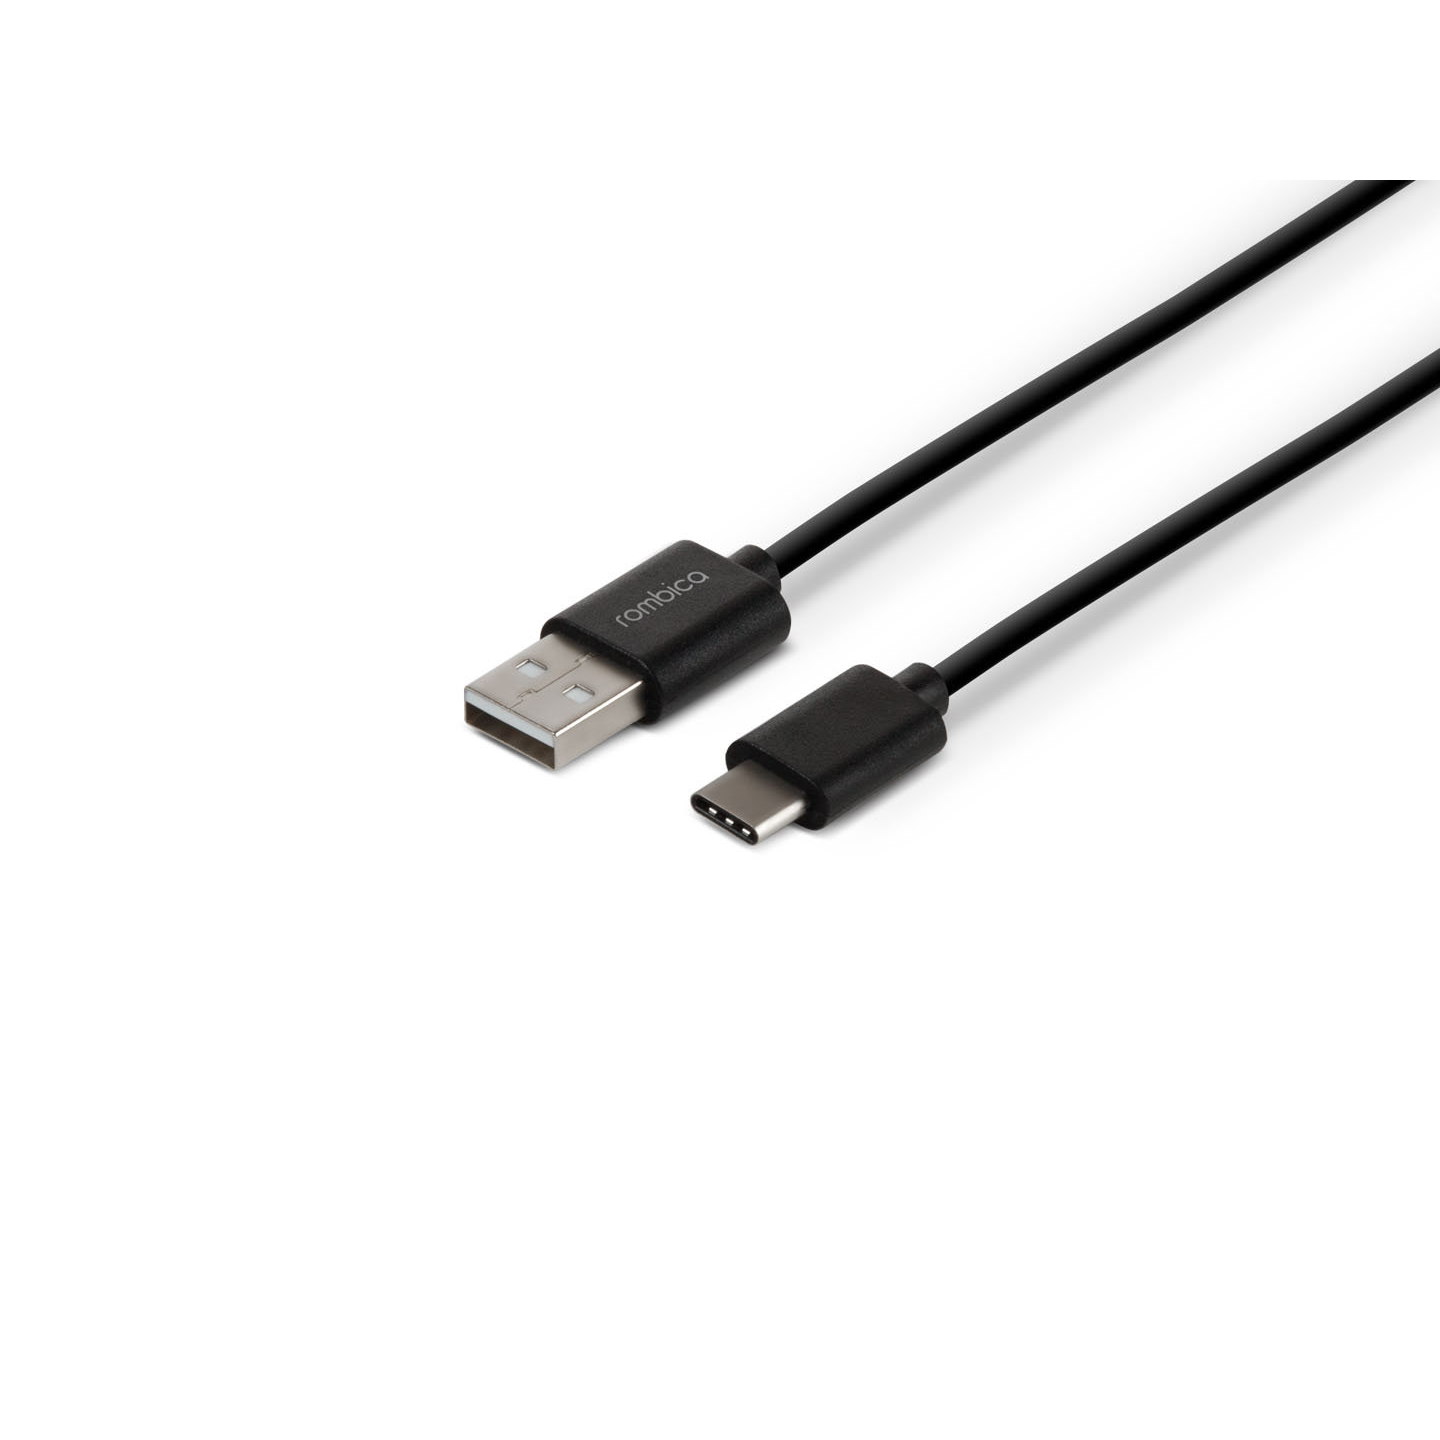 Кабель Rombica Digital CR-01, USB - USB Type-C, пластик, 1м, черный кабель rombica digital usb usb type c cl 01 1 м темно зеленый